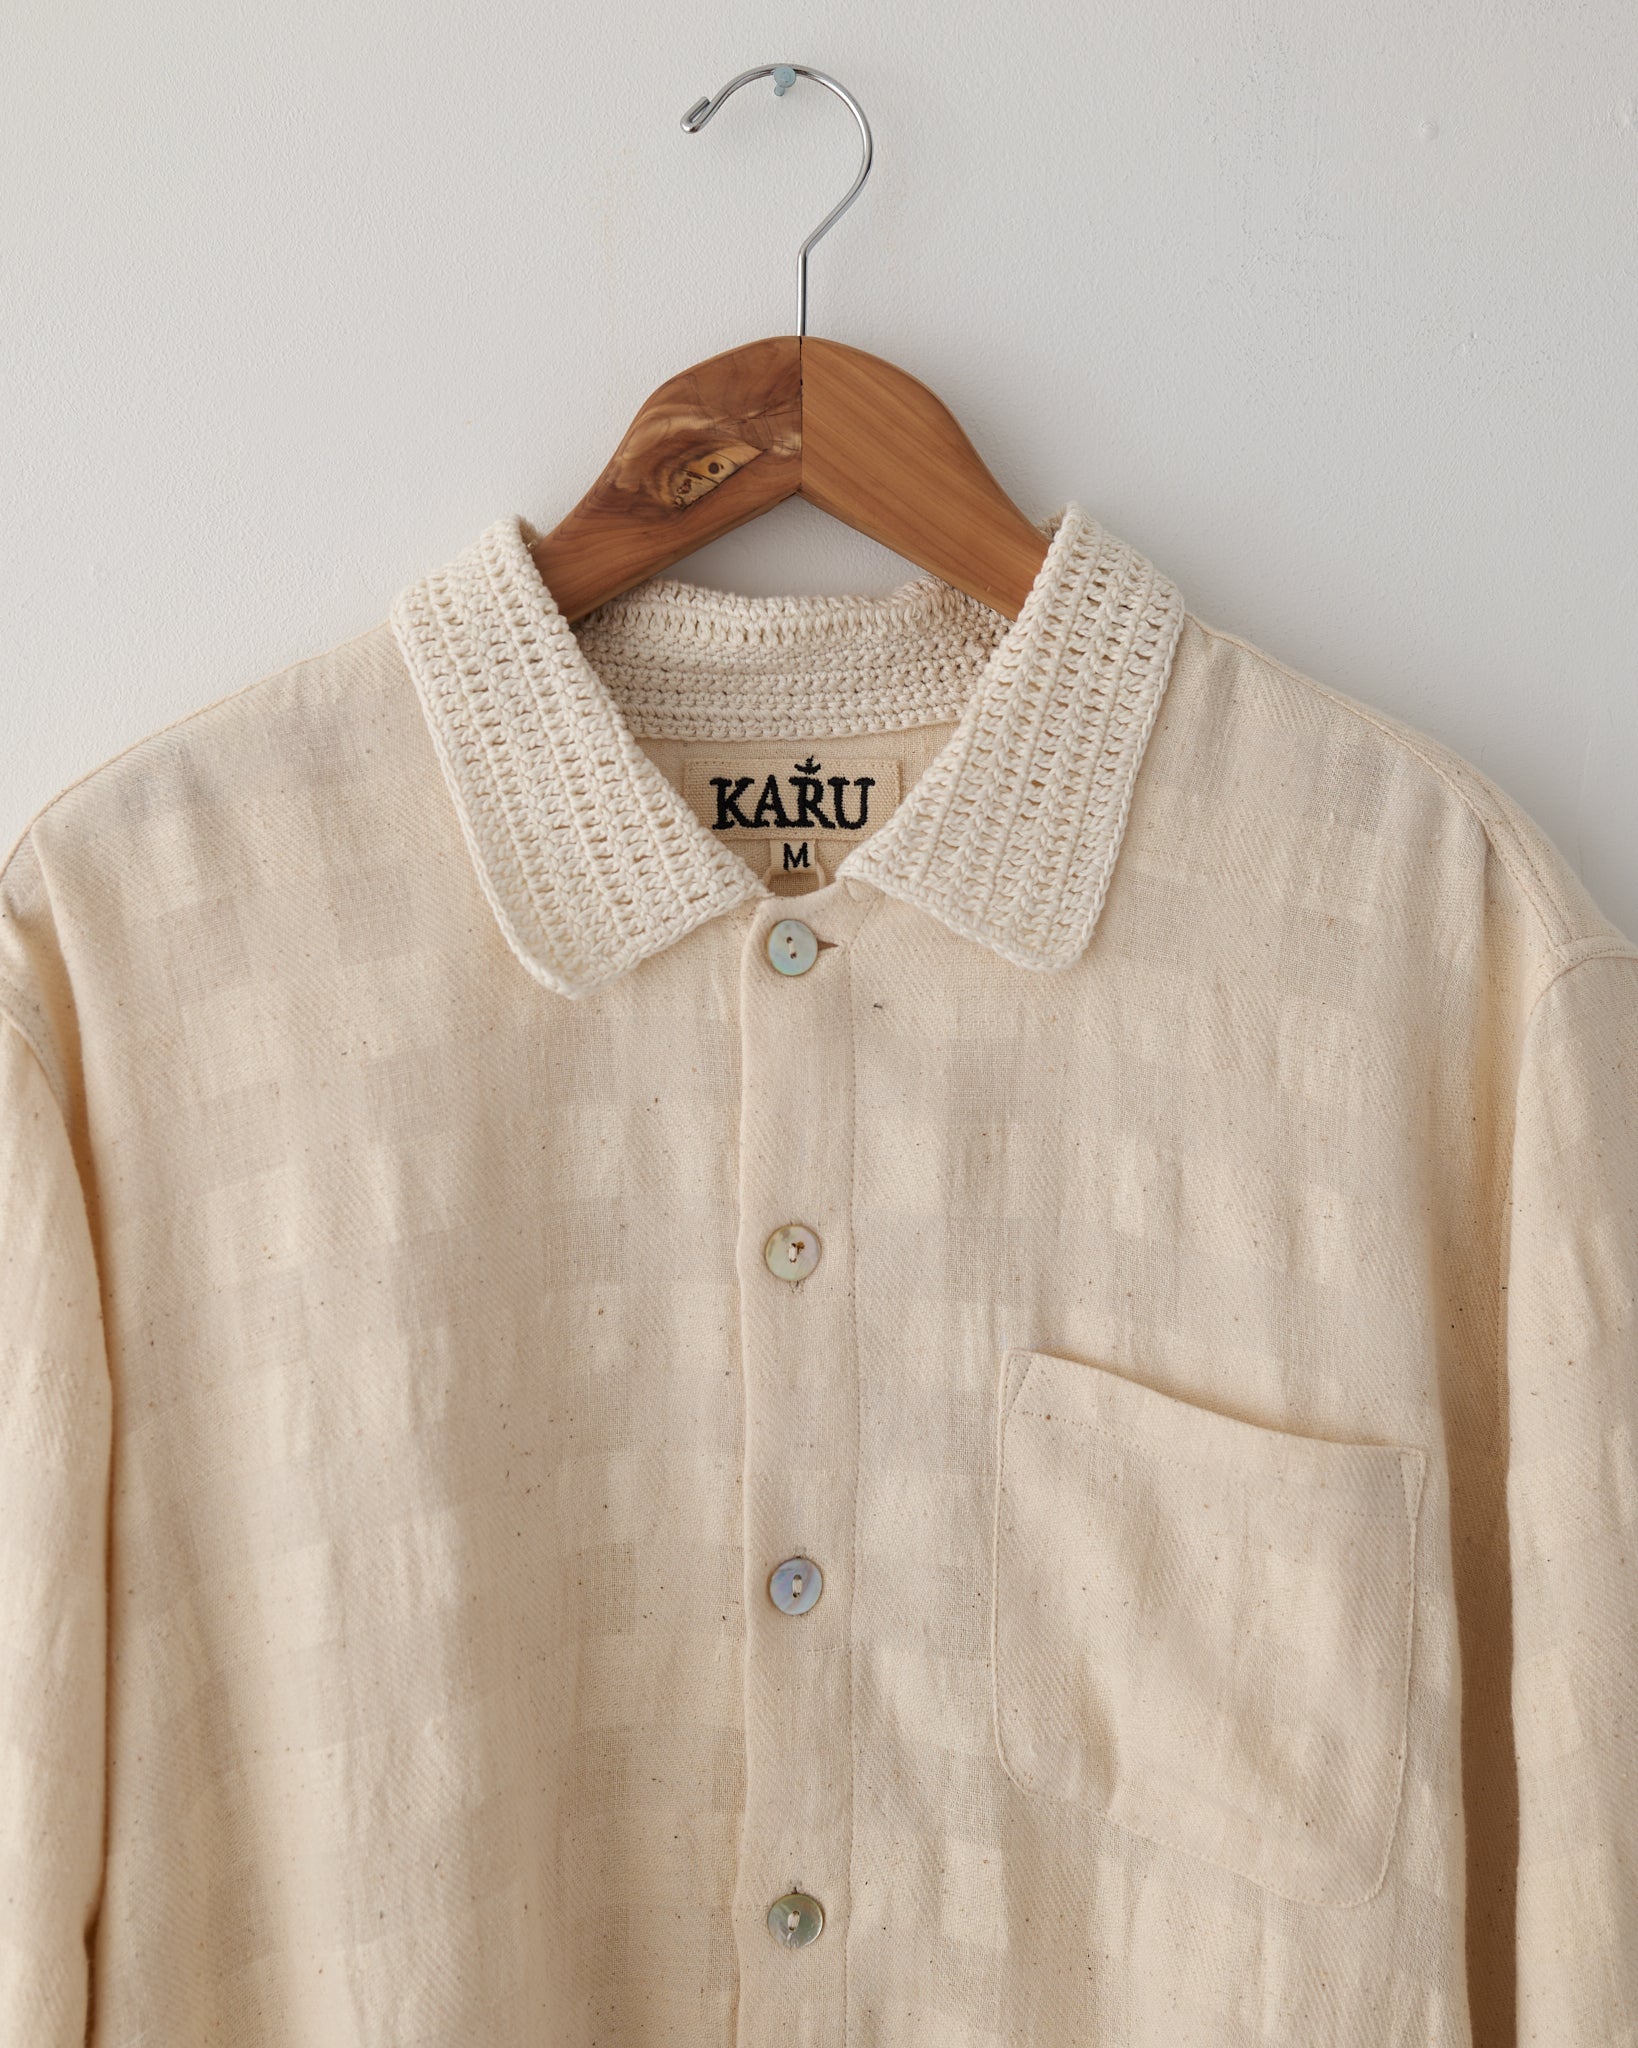 Cotton Woven Shirt, Handloom Crochet Collar